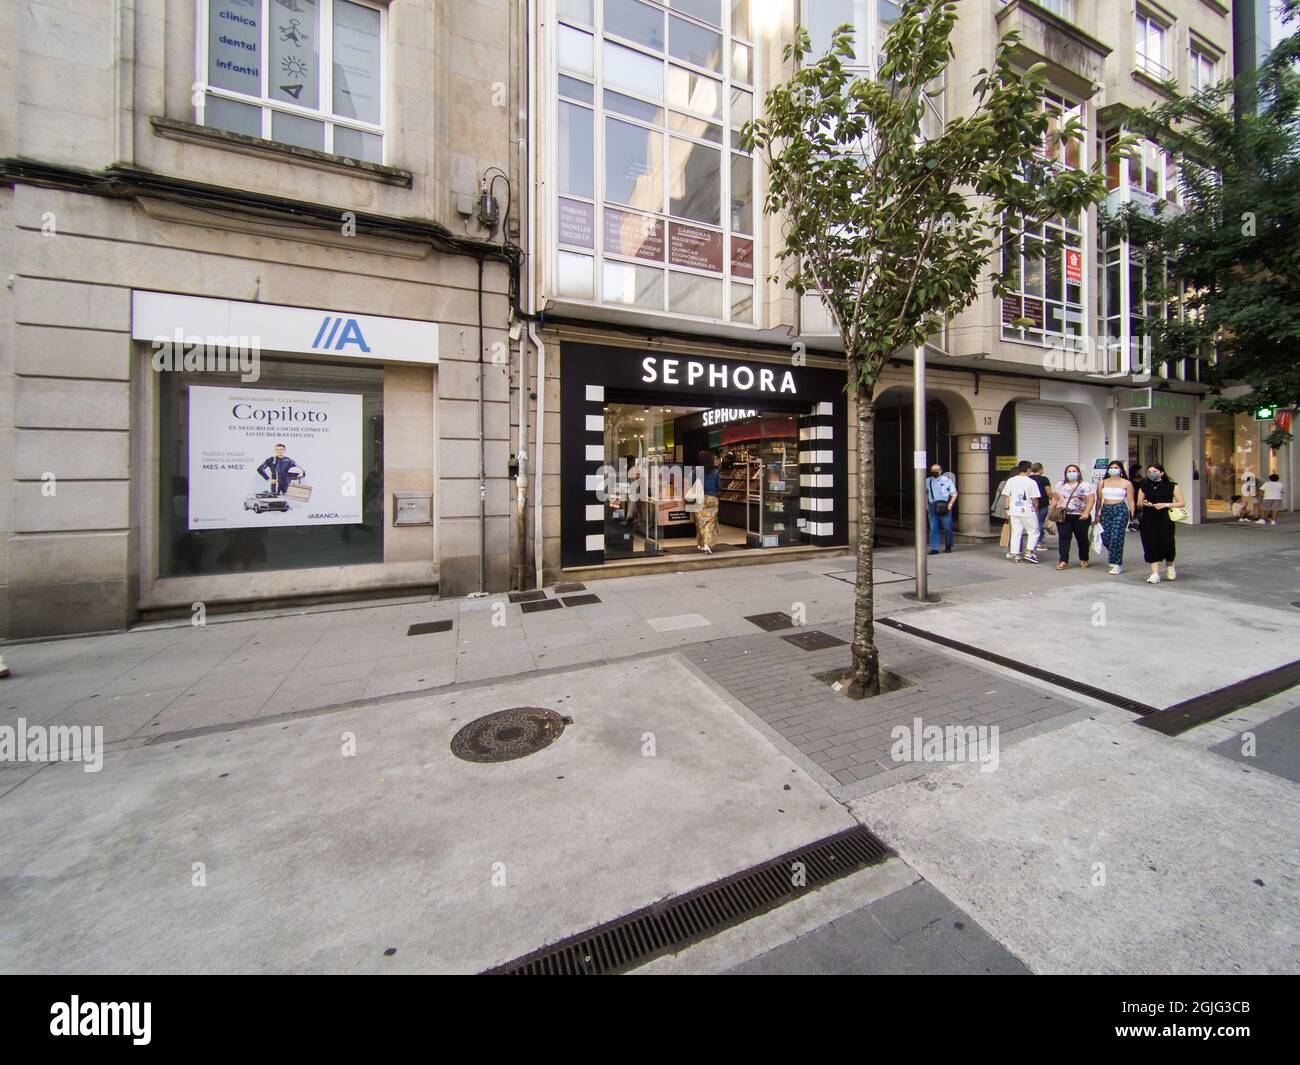 VIGO, ESPAÑA - 23 de agosto de 2021: La fachada de la tienda GEOX en Vigo,  España Fotografía de stock - Alamy